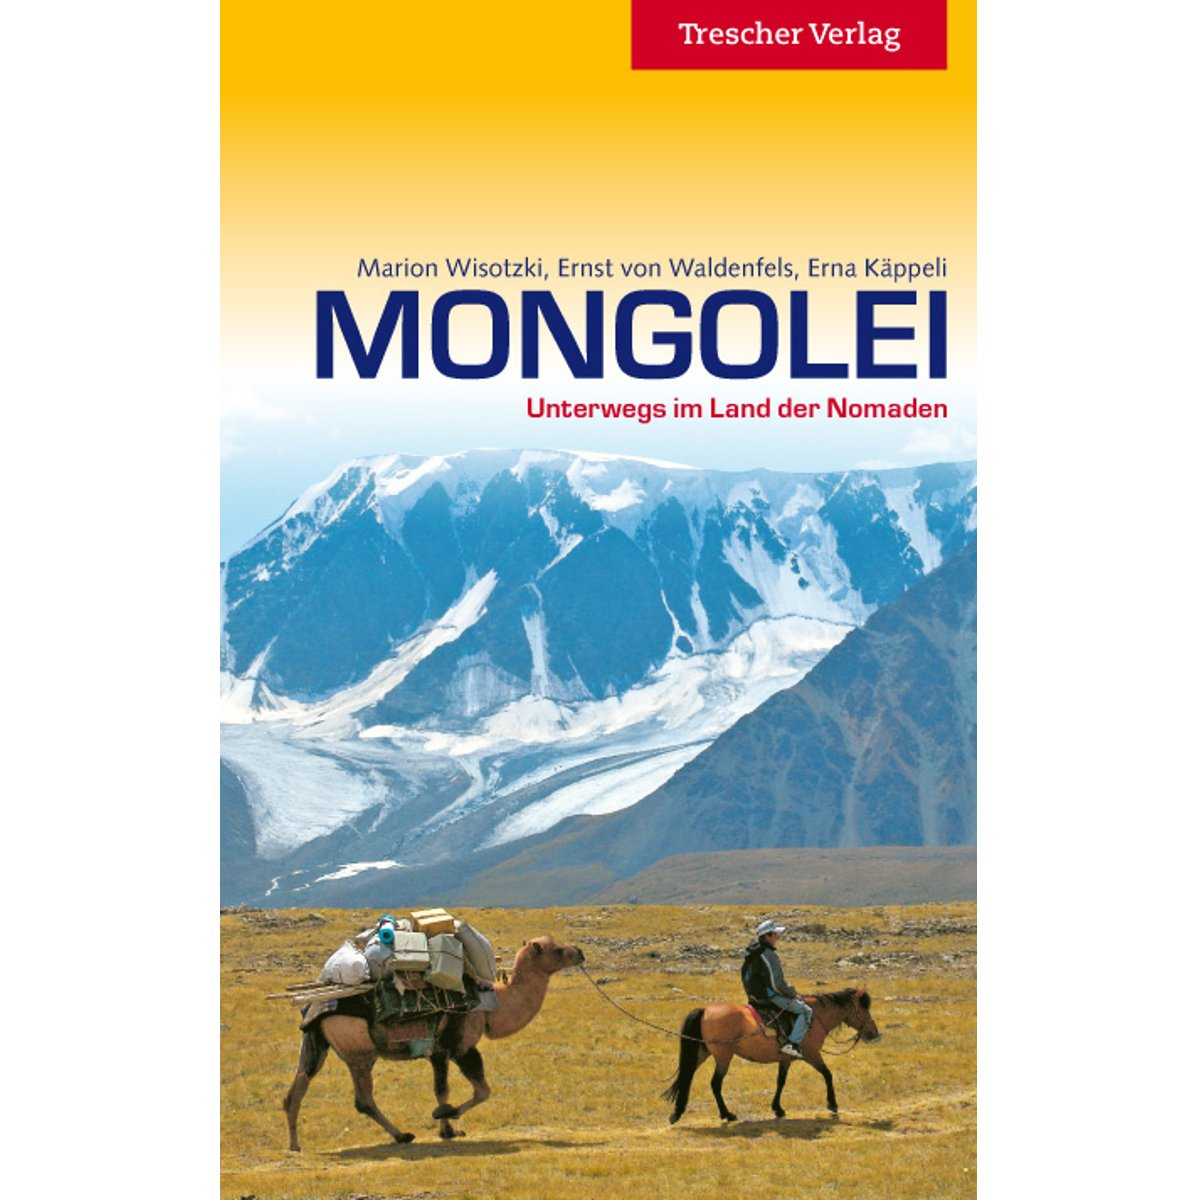 Gemälde von traditionellen mongolischen Ger-Yurten